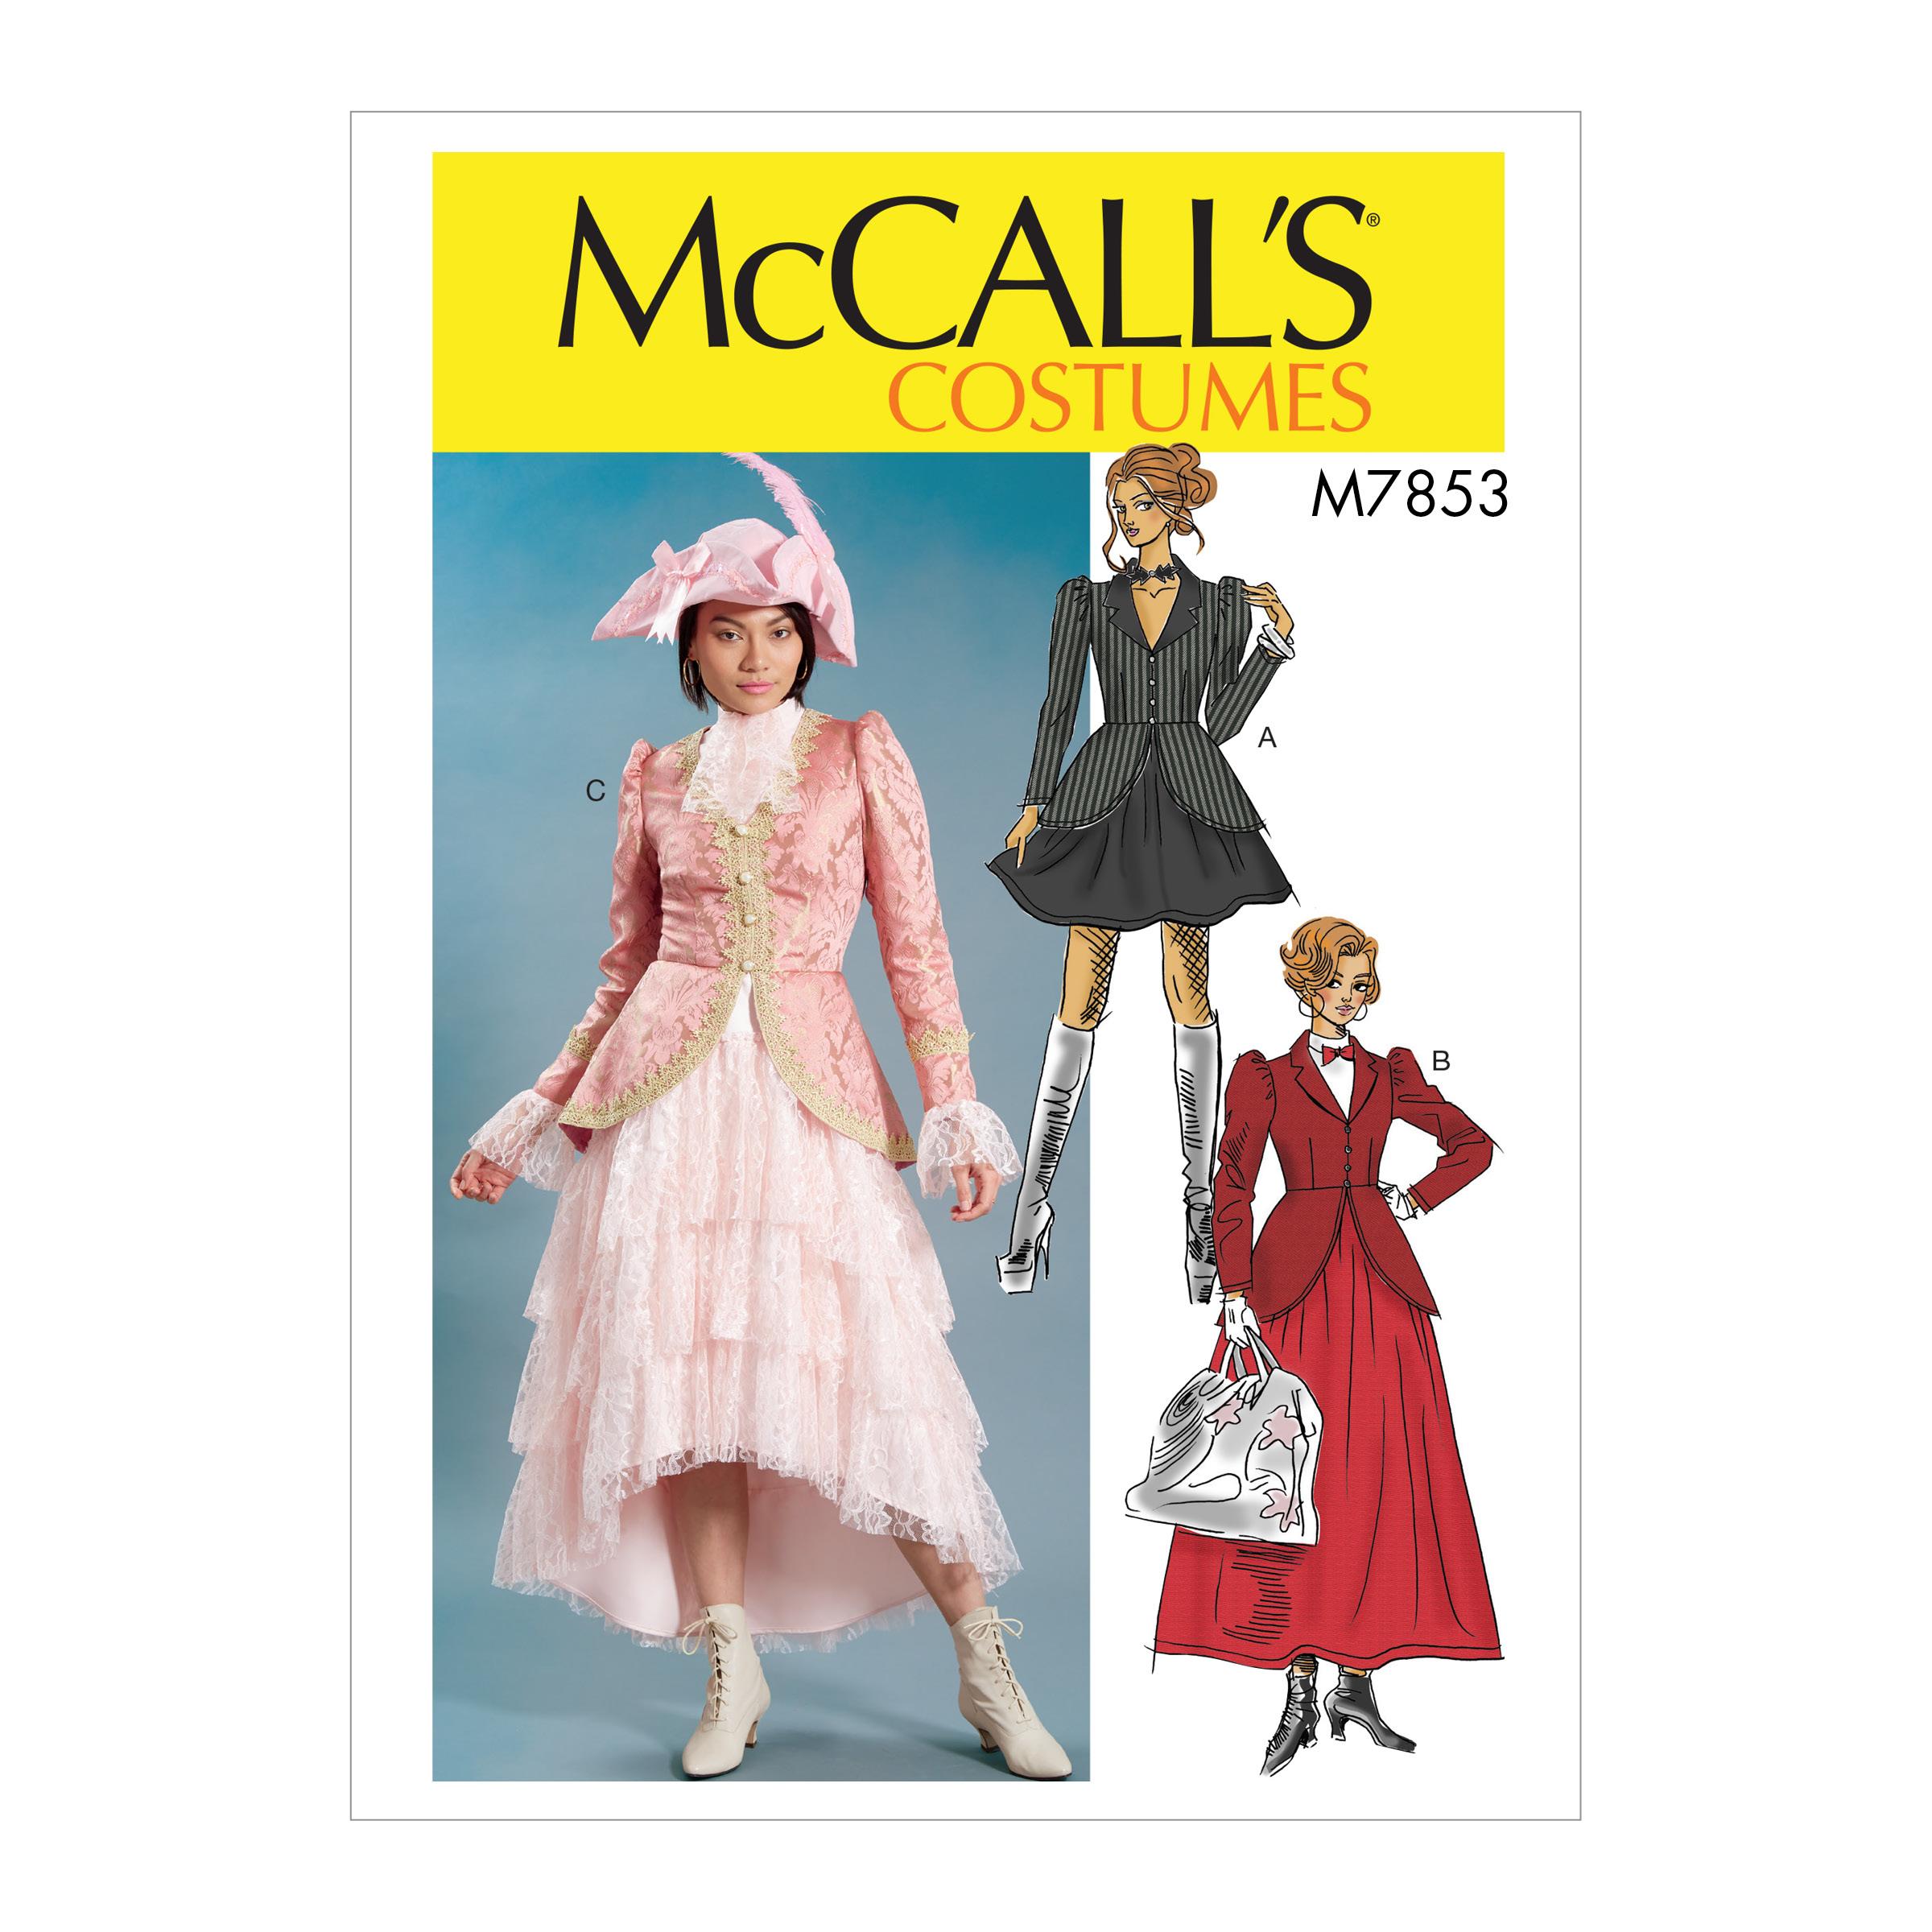 McCalls M7853 Costumes